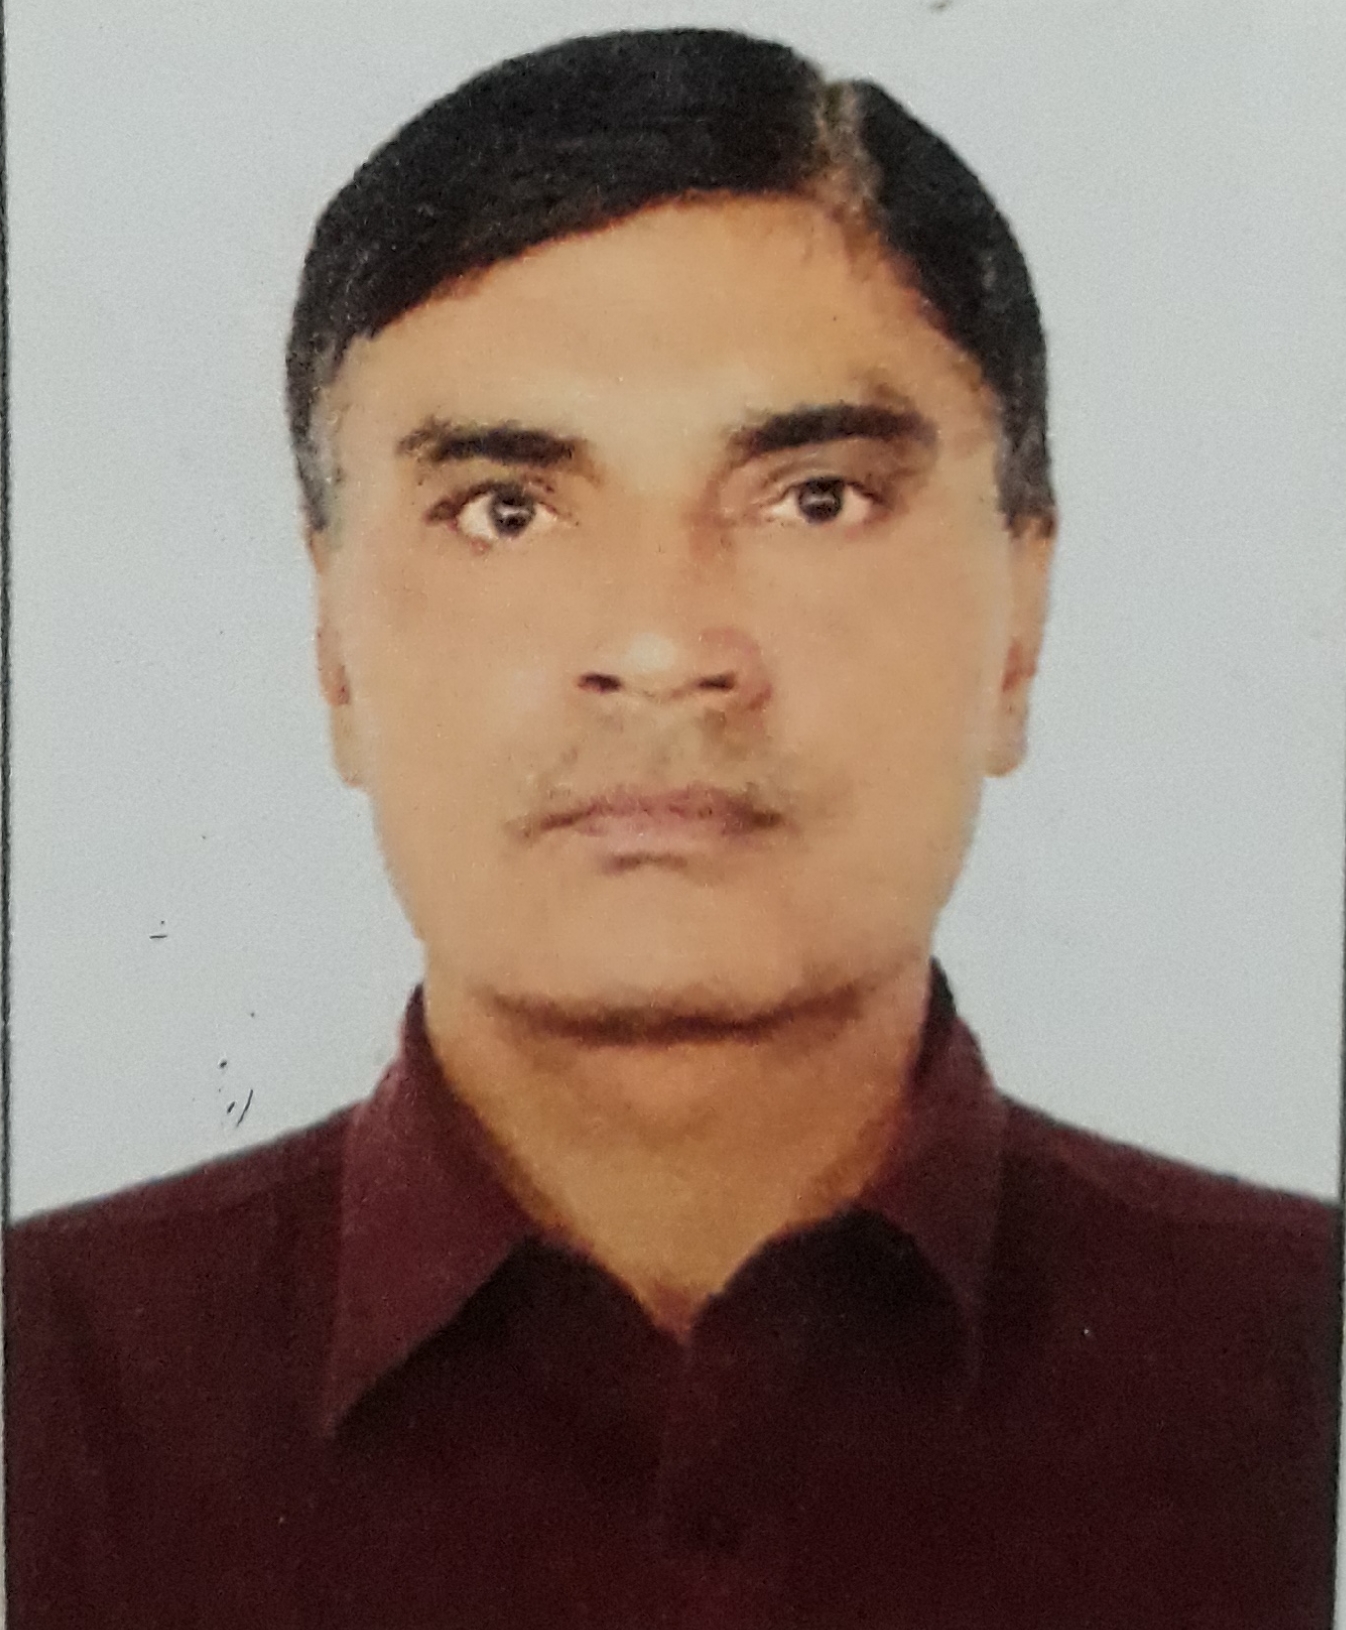 Mr. Dileshbhai S Patel